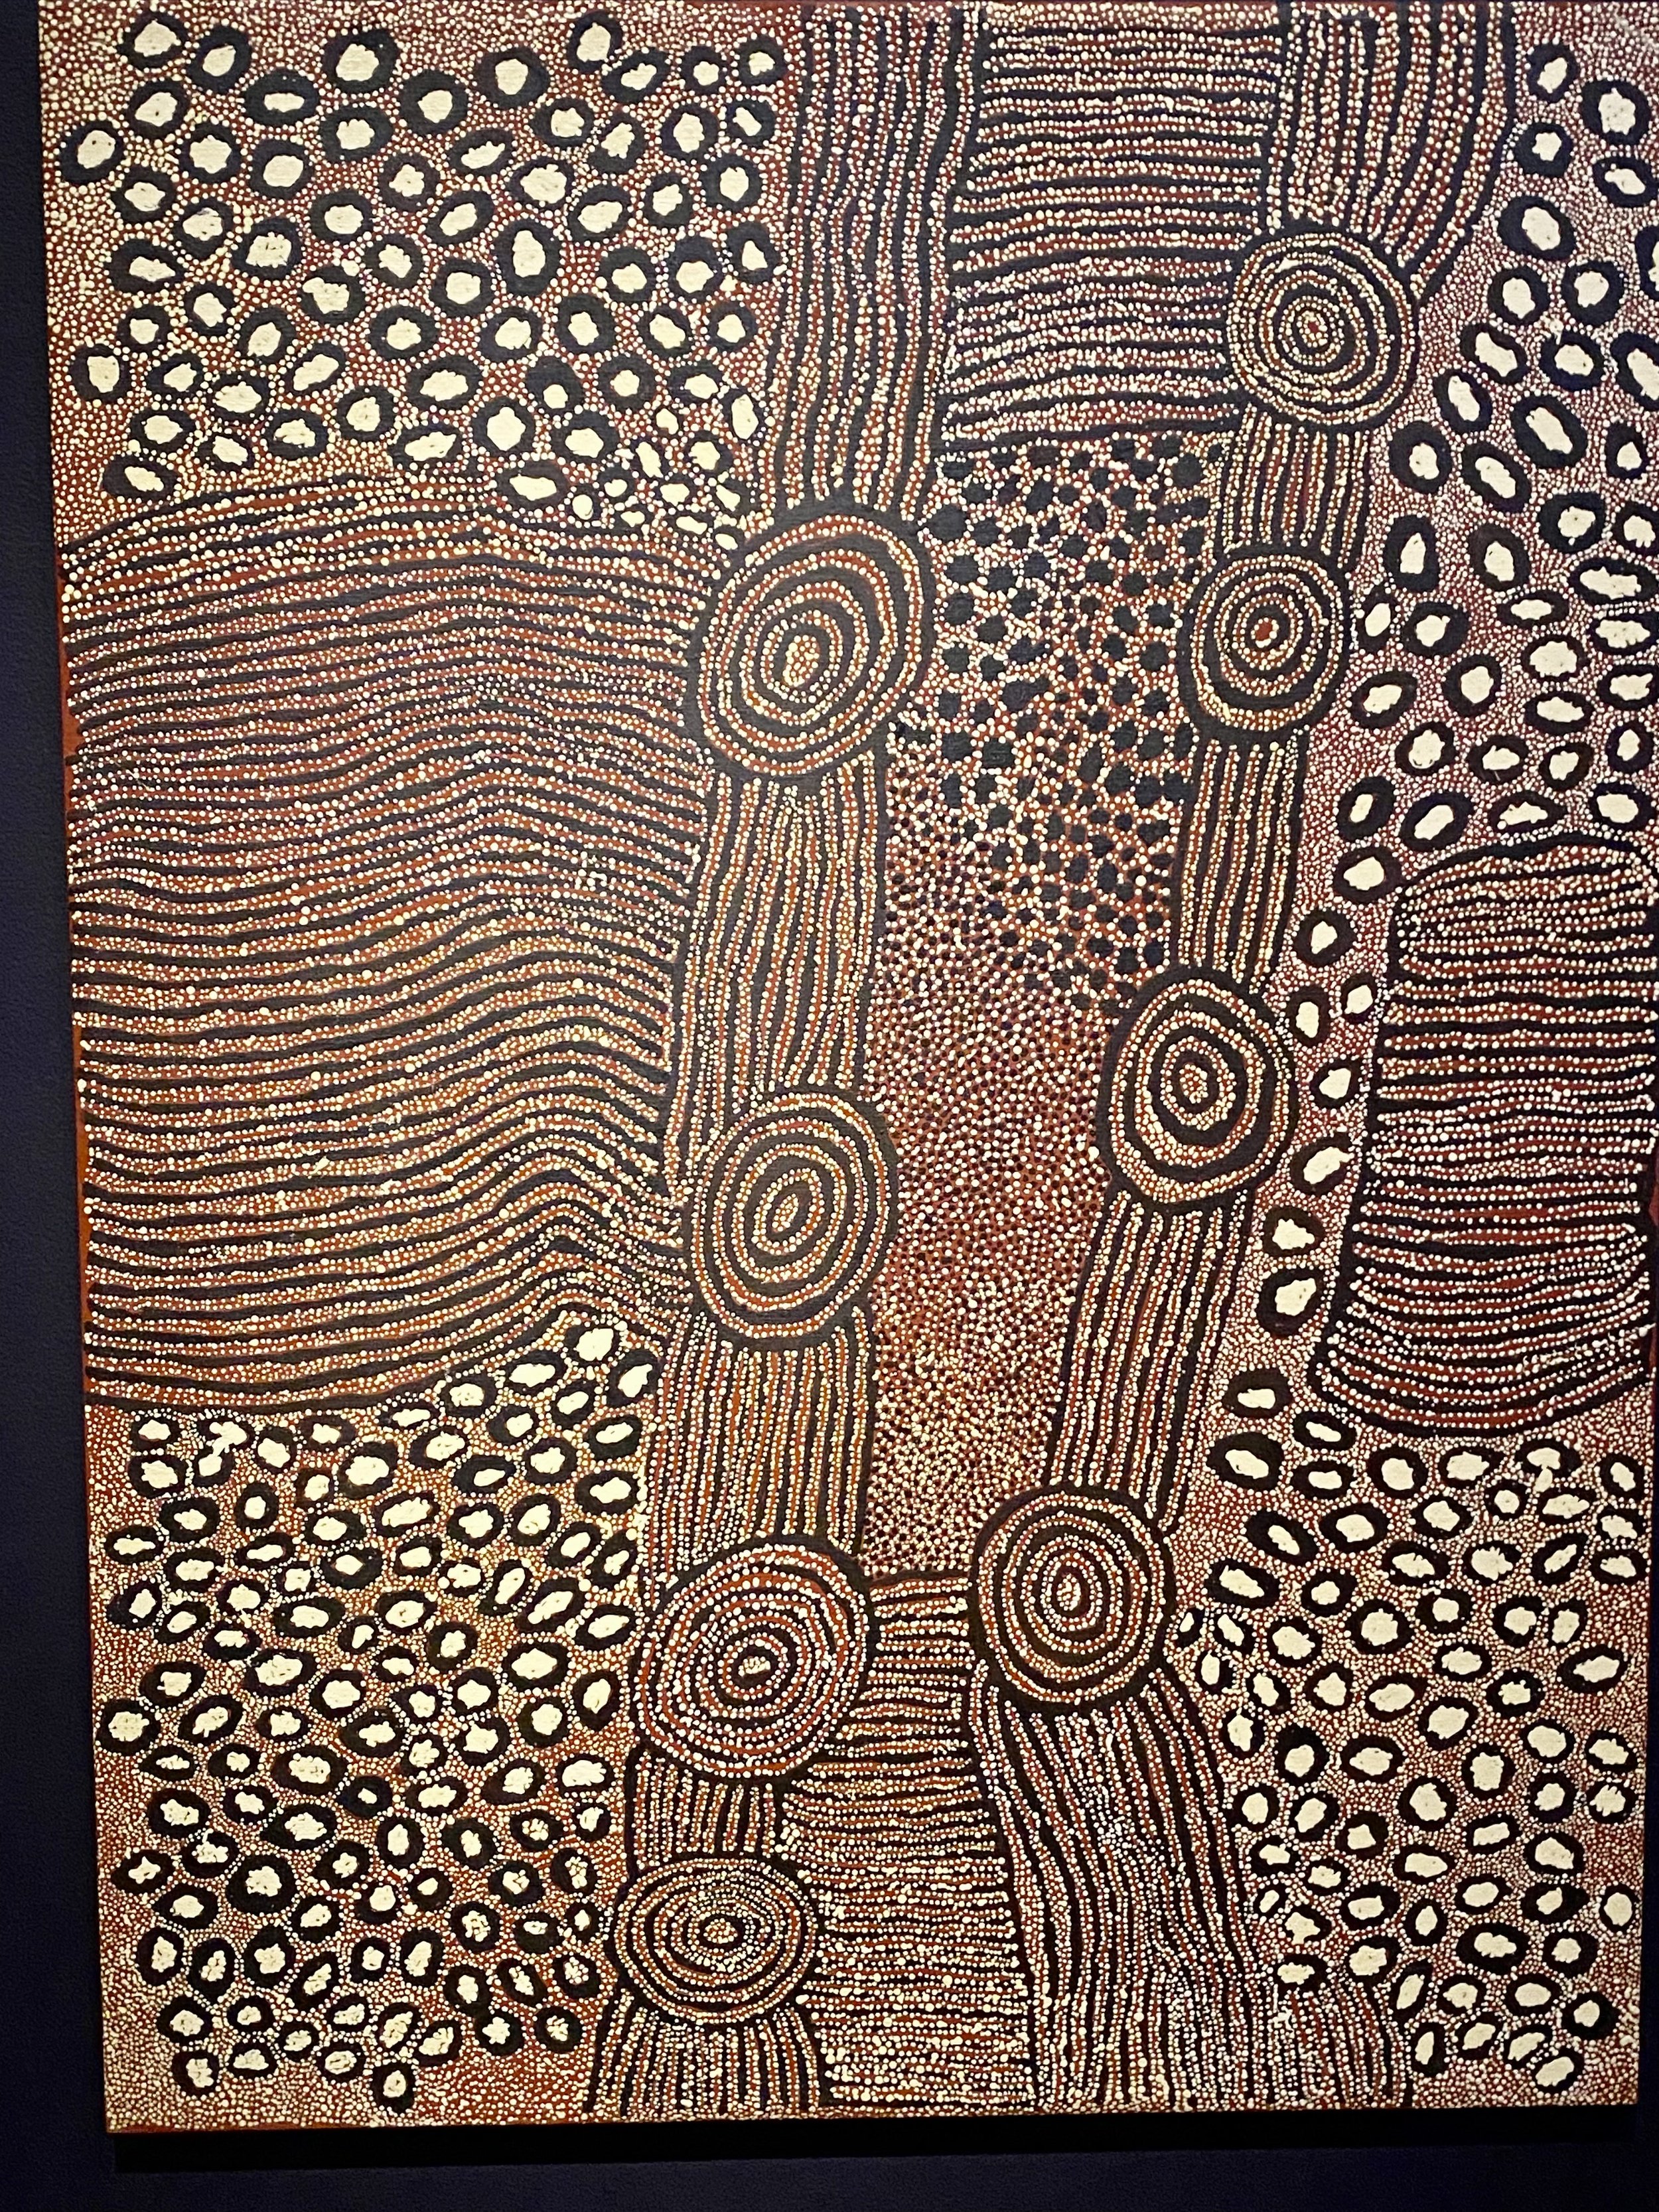 SAM-Aborigne-Art1.jpg